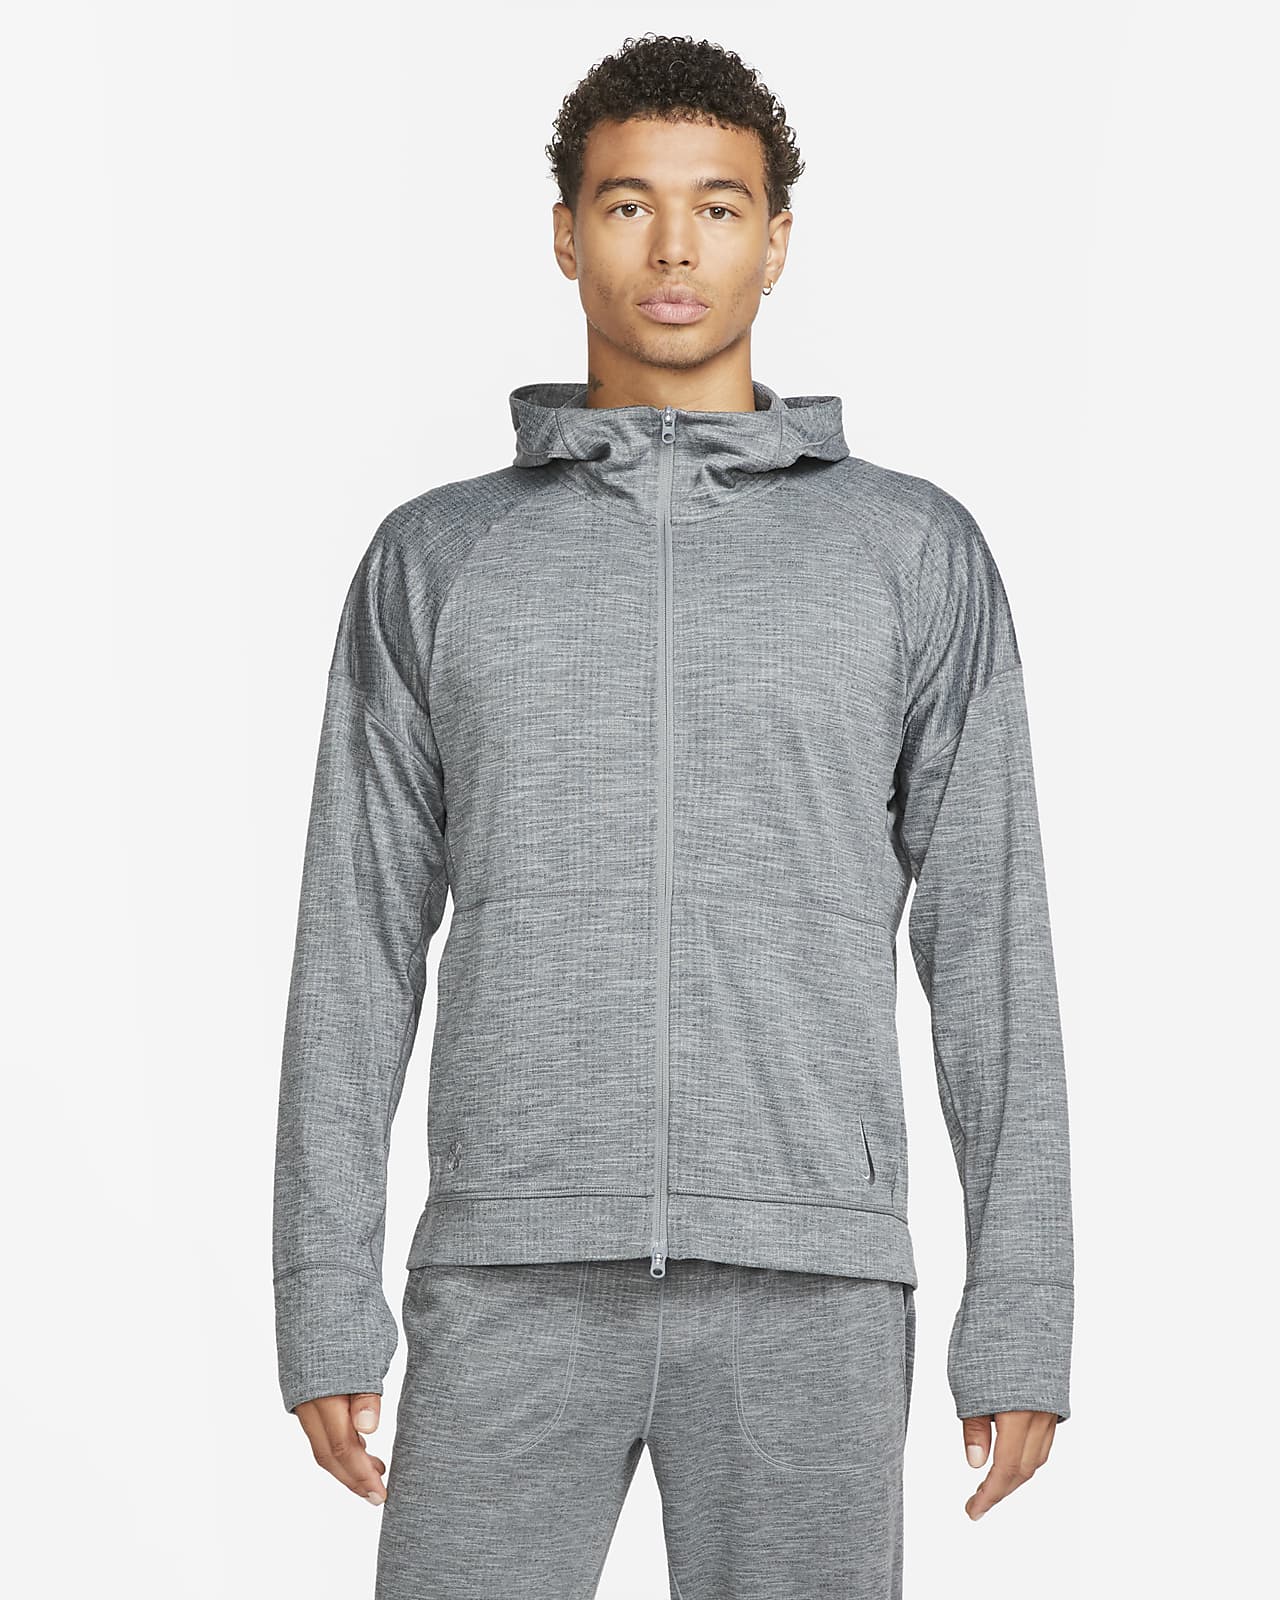 Nike Yoga Dri-FIT Men's Full-Zip Jersey Hoodie